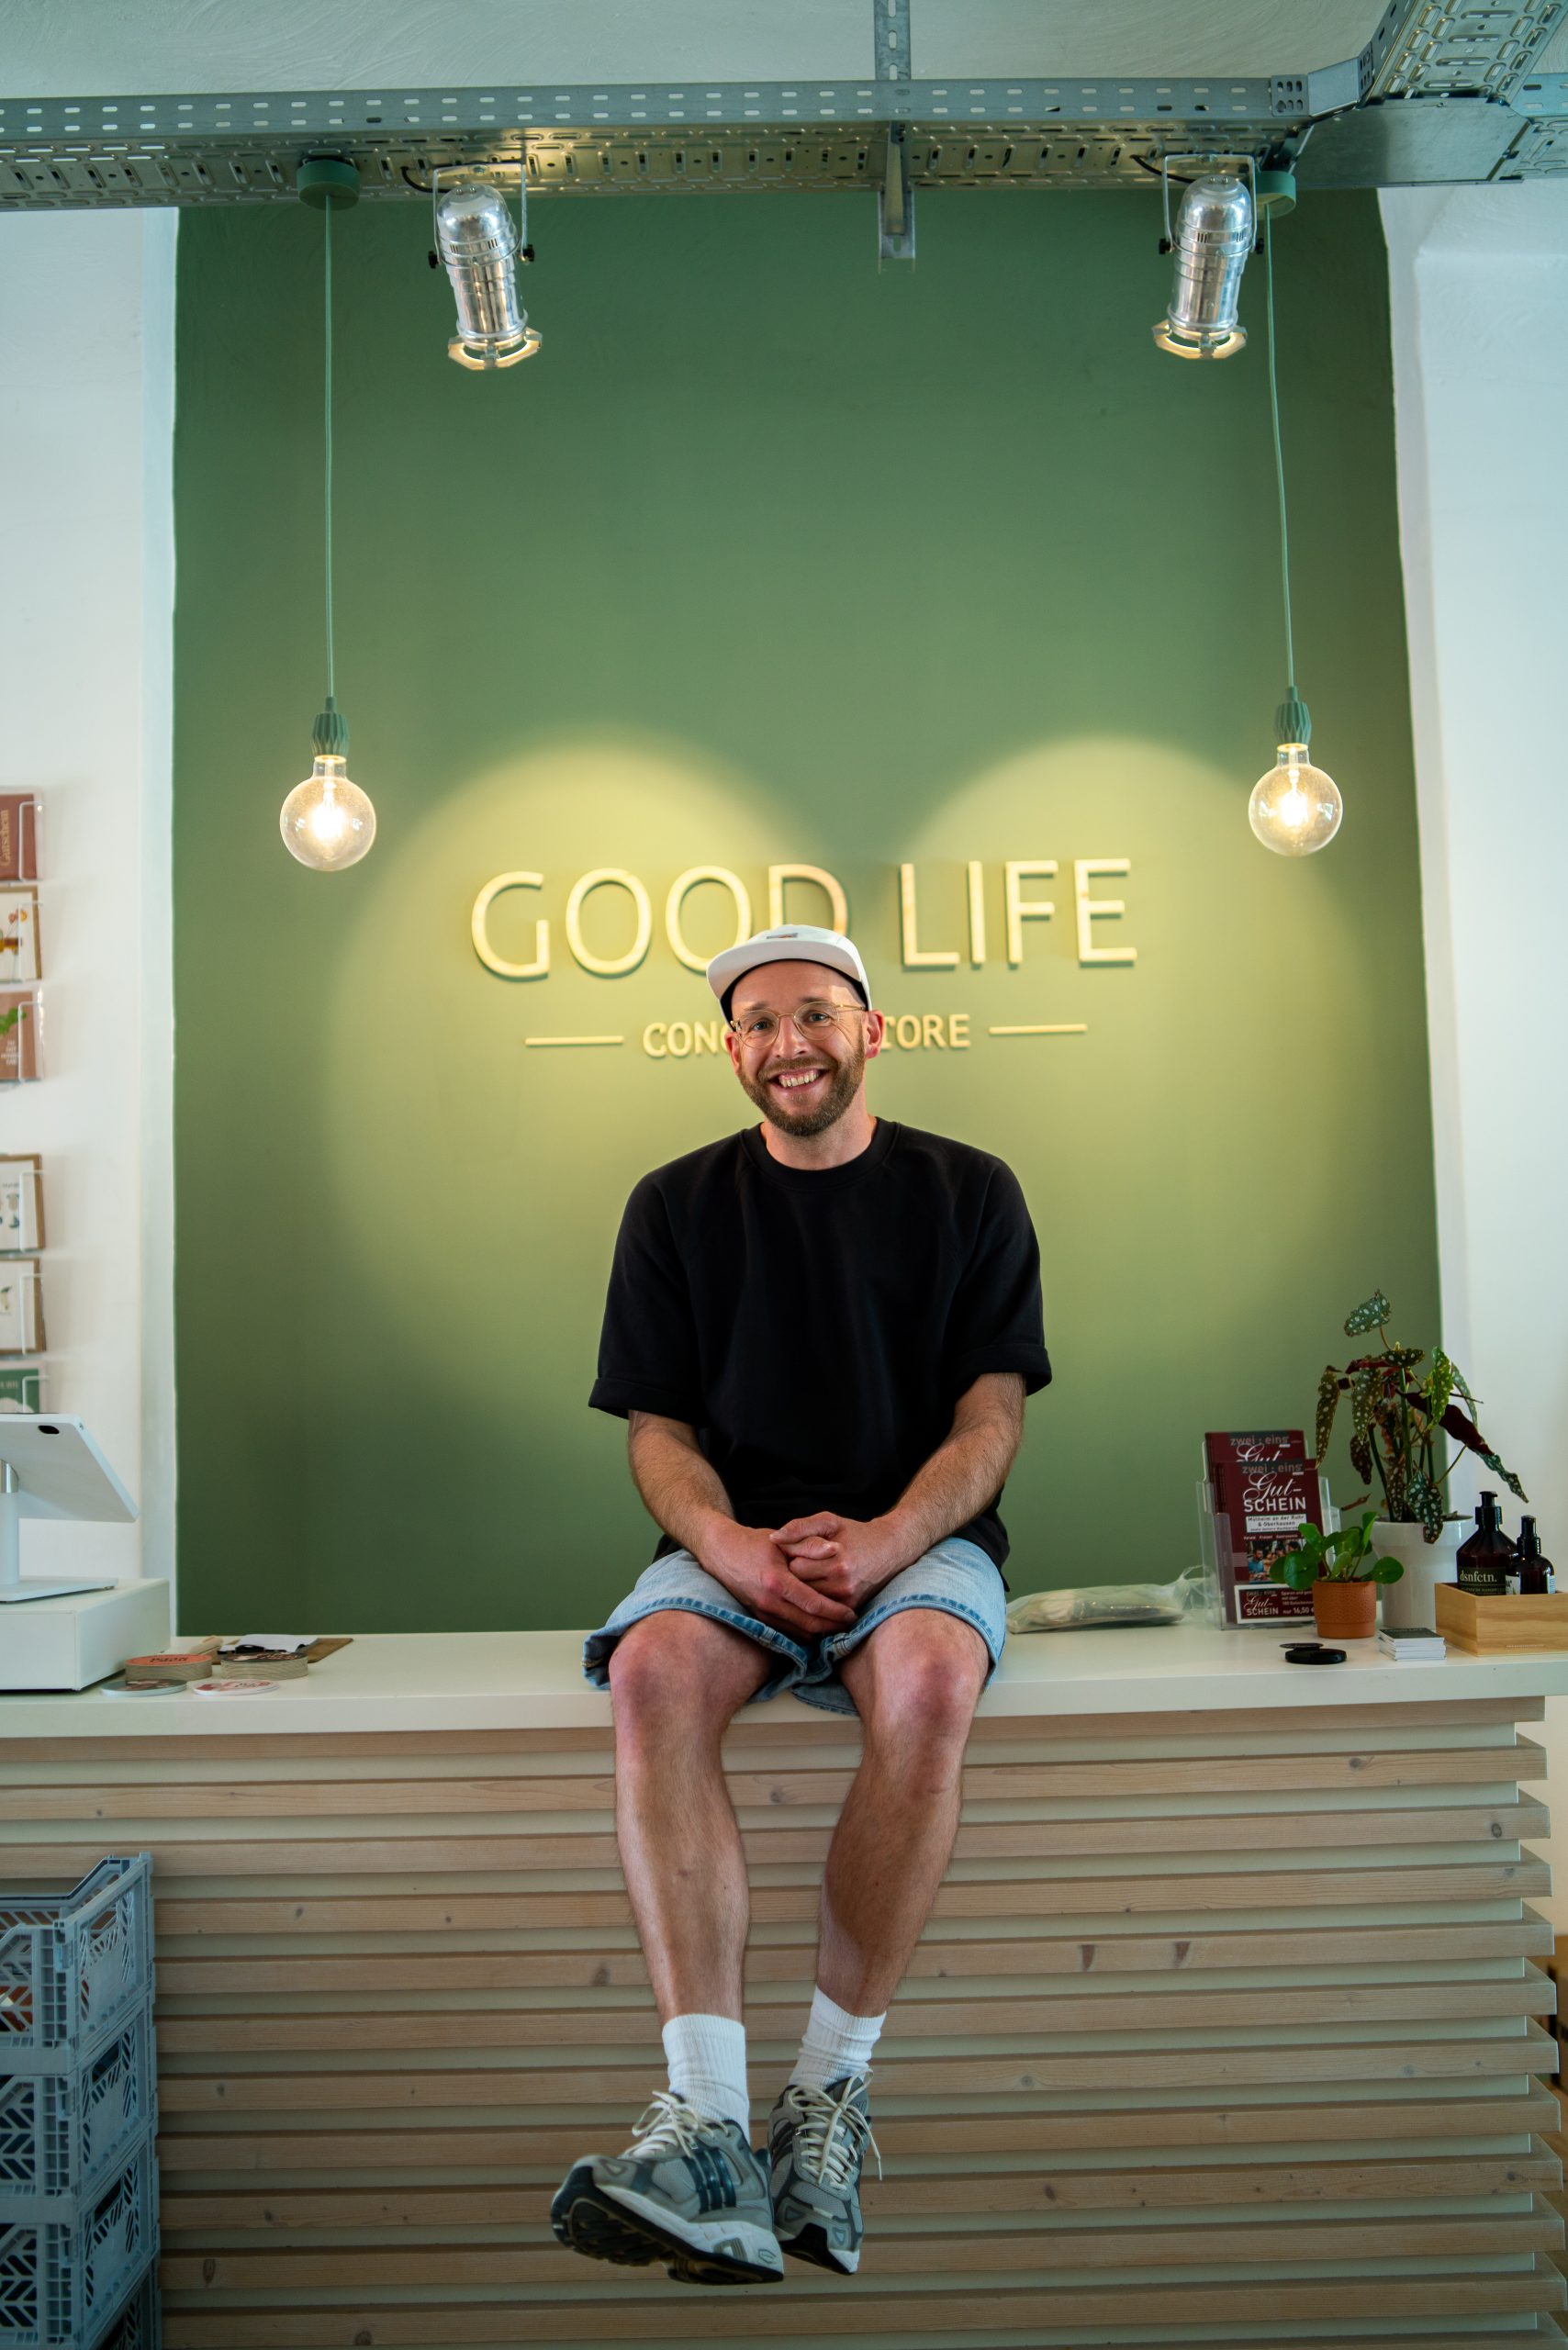 Das Foto zeigt den Good Life Concept Store im Wallviertel in Mülheim an der Ruhr